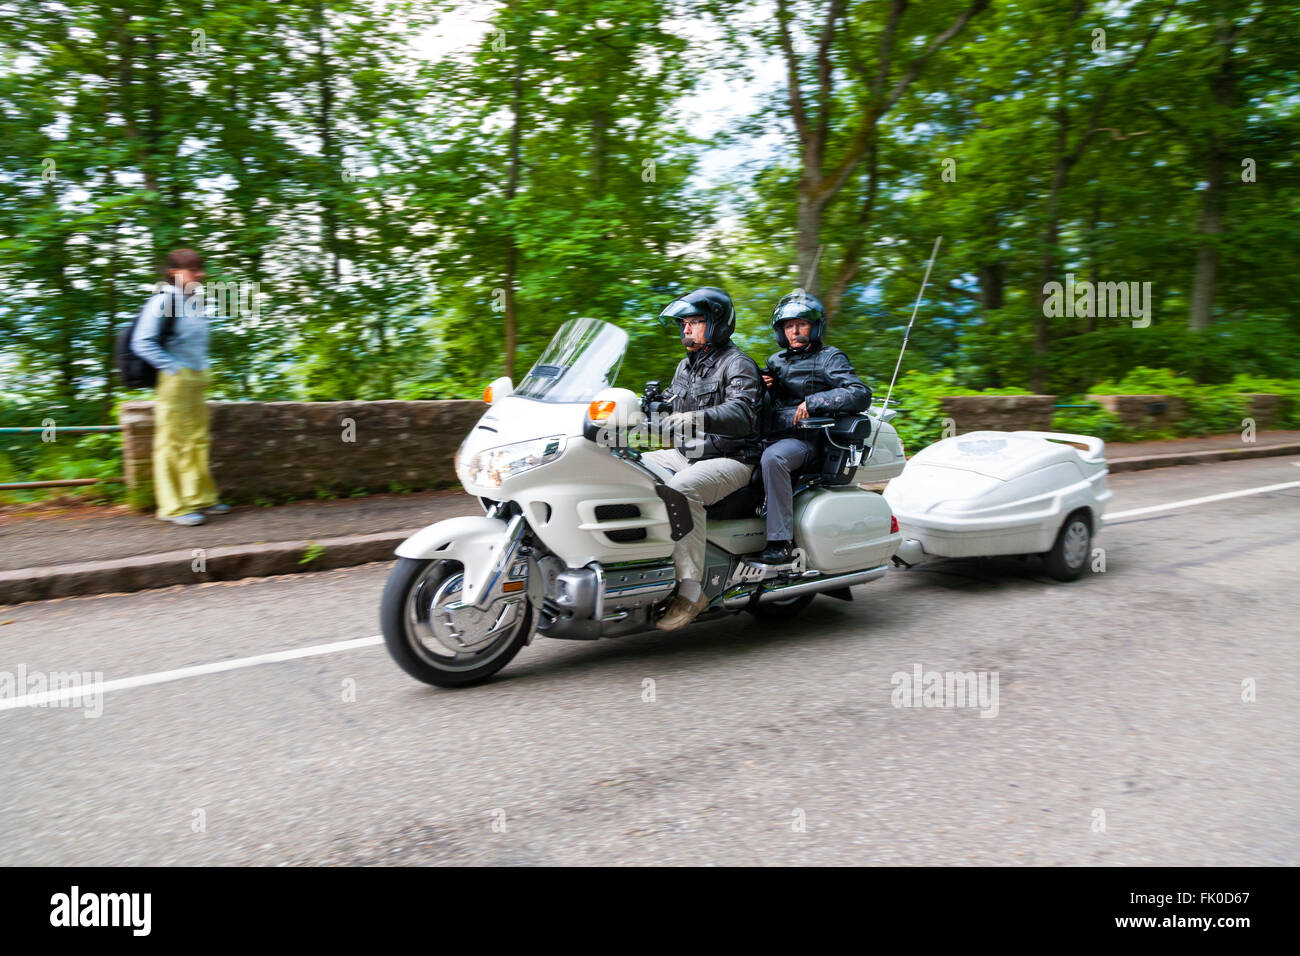 Motorradfahrer, die auf einem Motorrad unterwegs Alsace Haut-Rhin-Frankreich Stockfoto